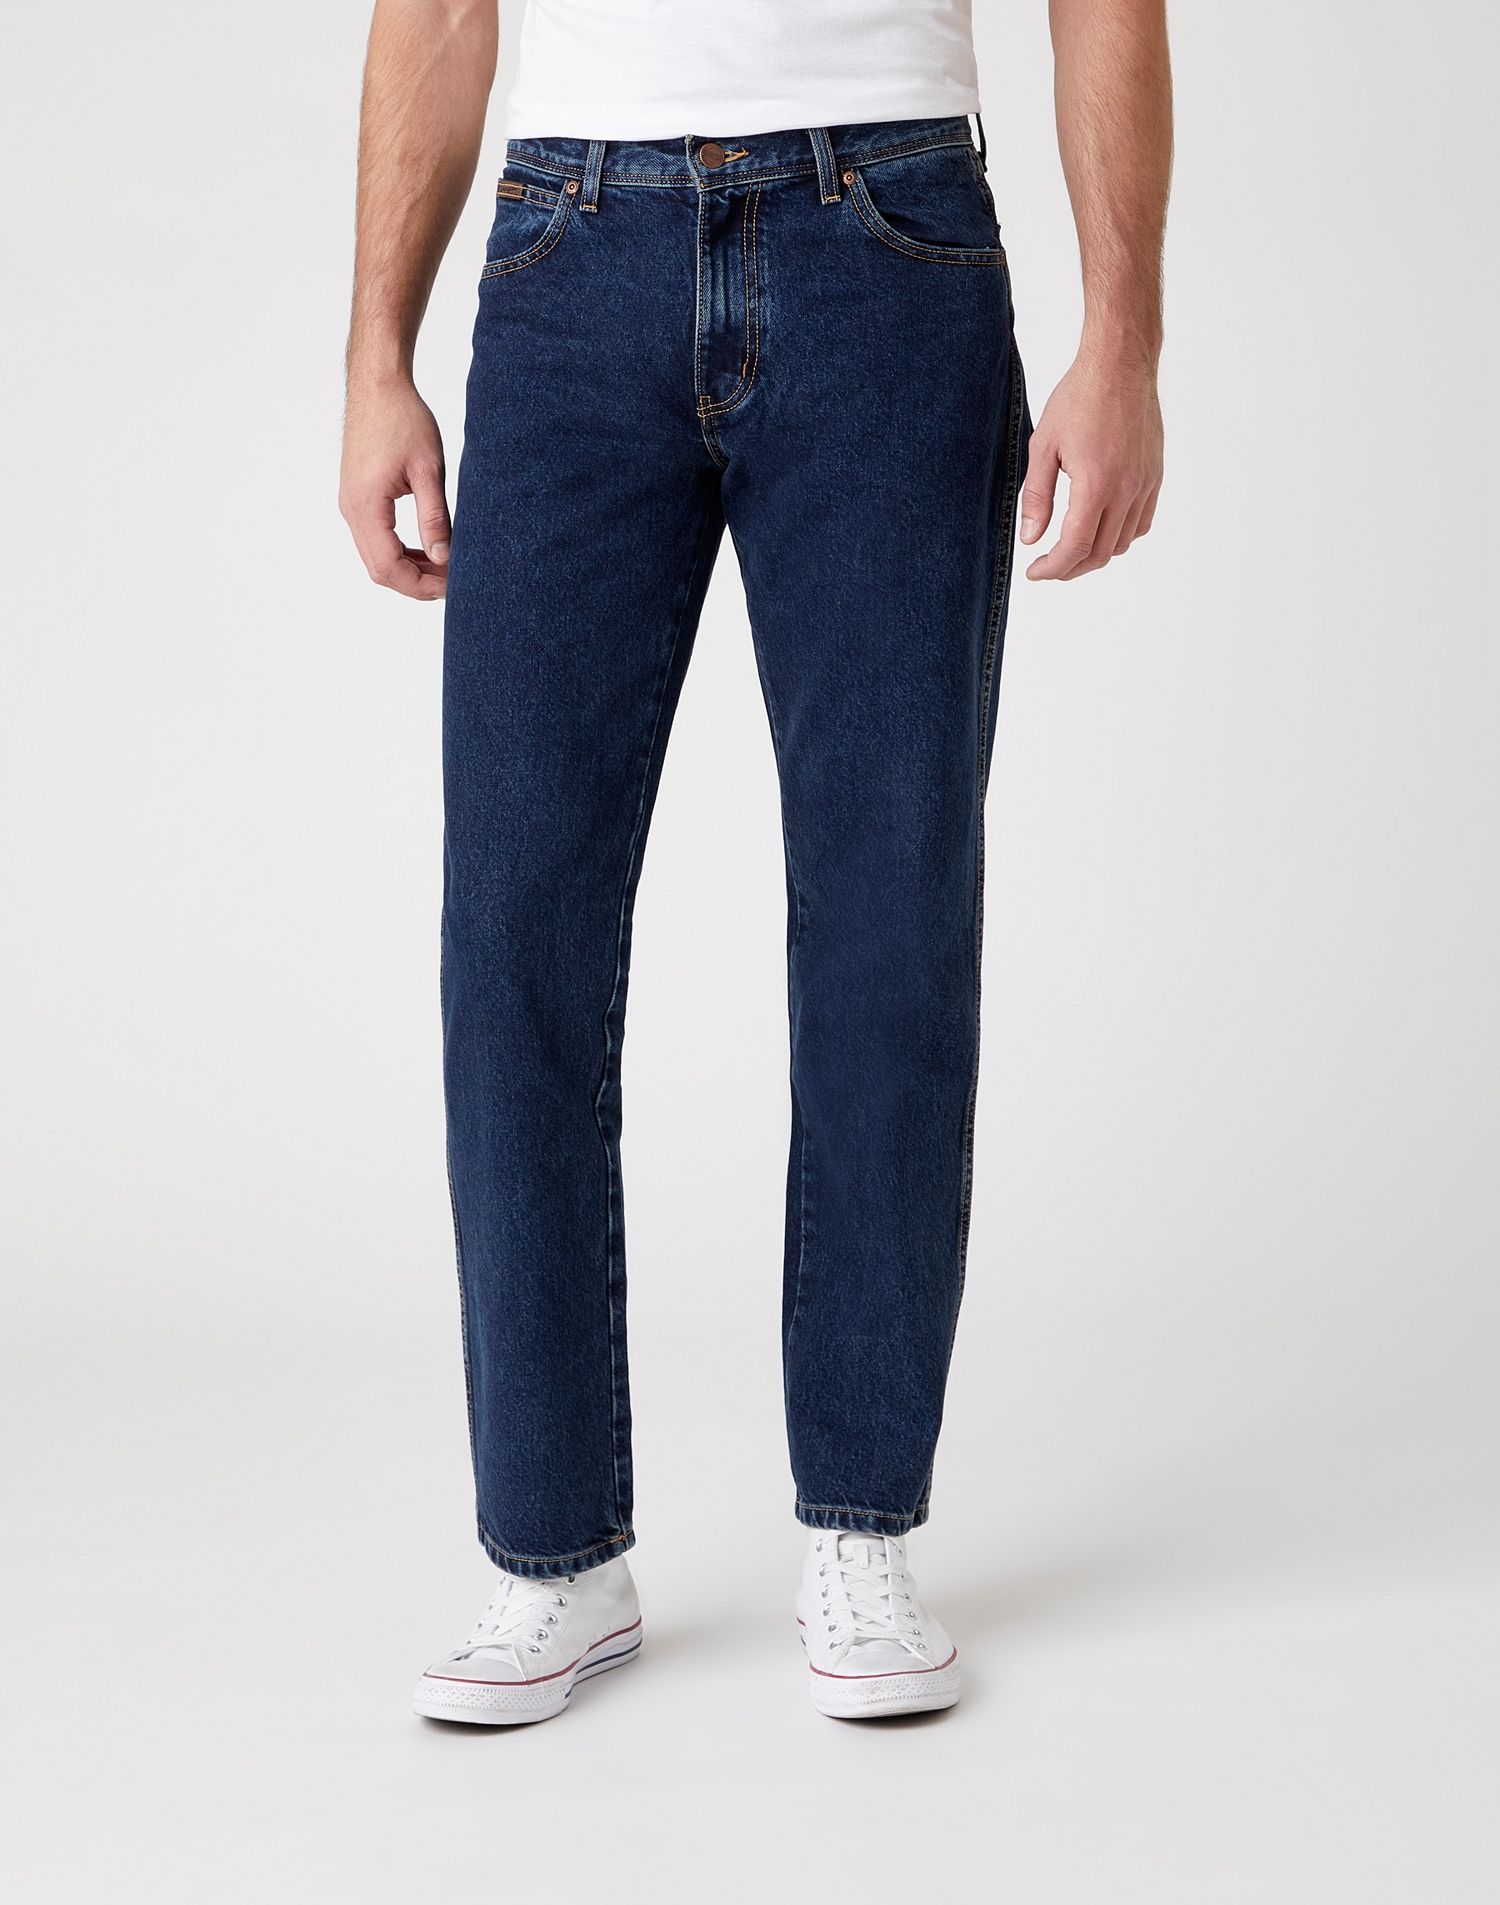 фото Джинсы мужские wrangler men texas jeans синие 34/34